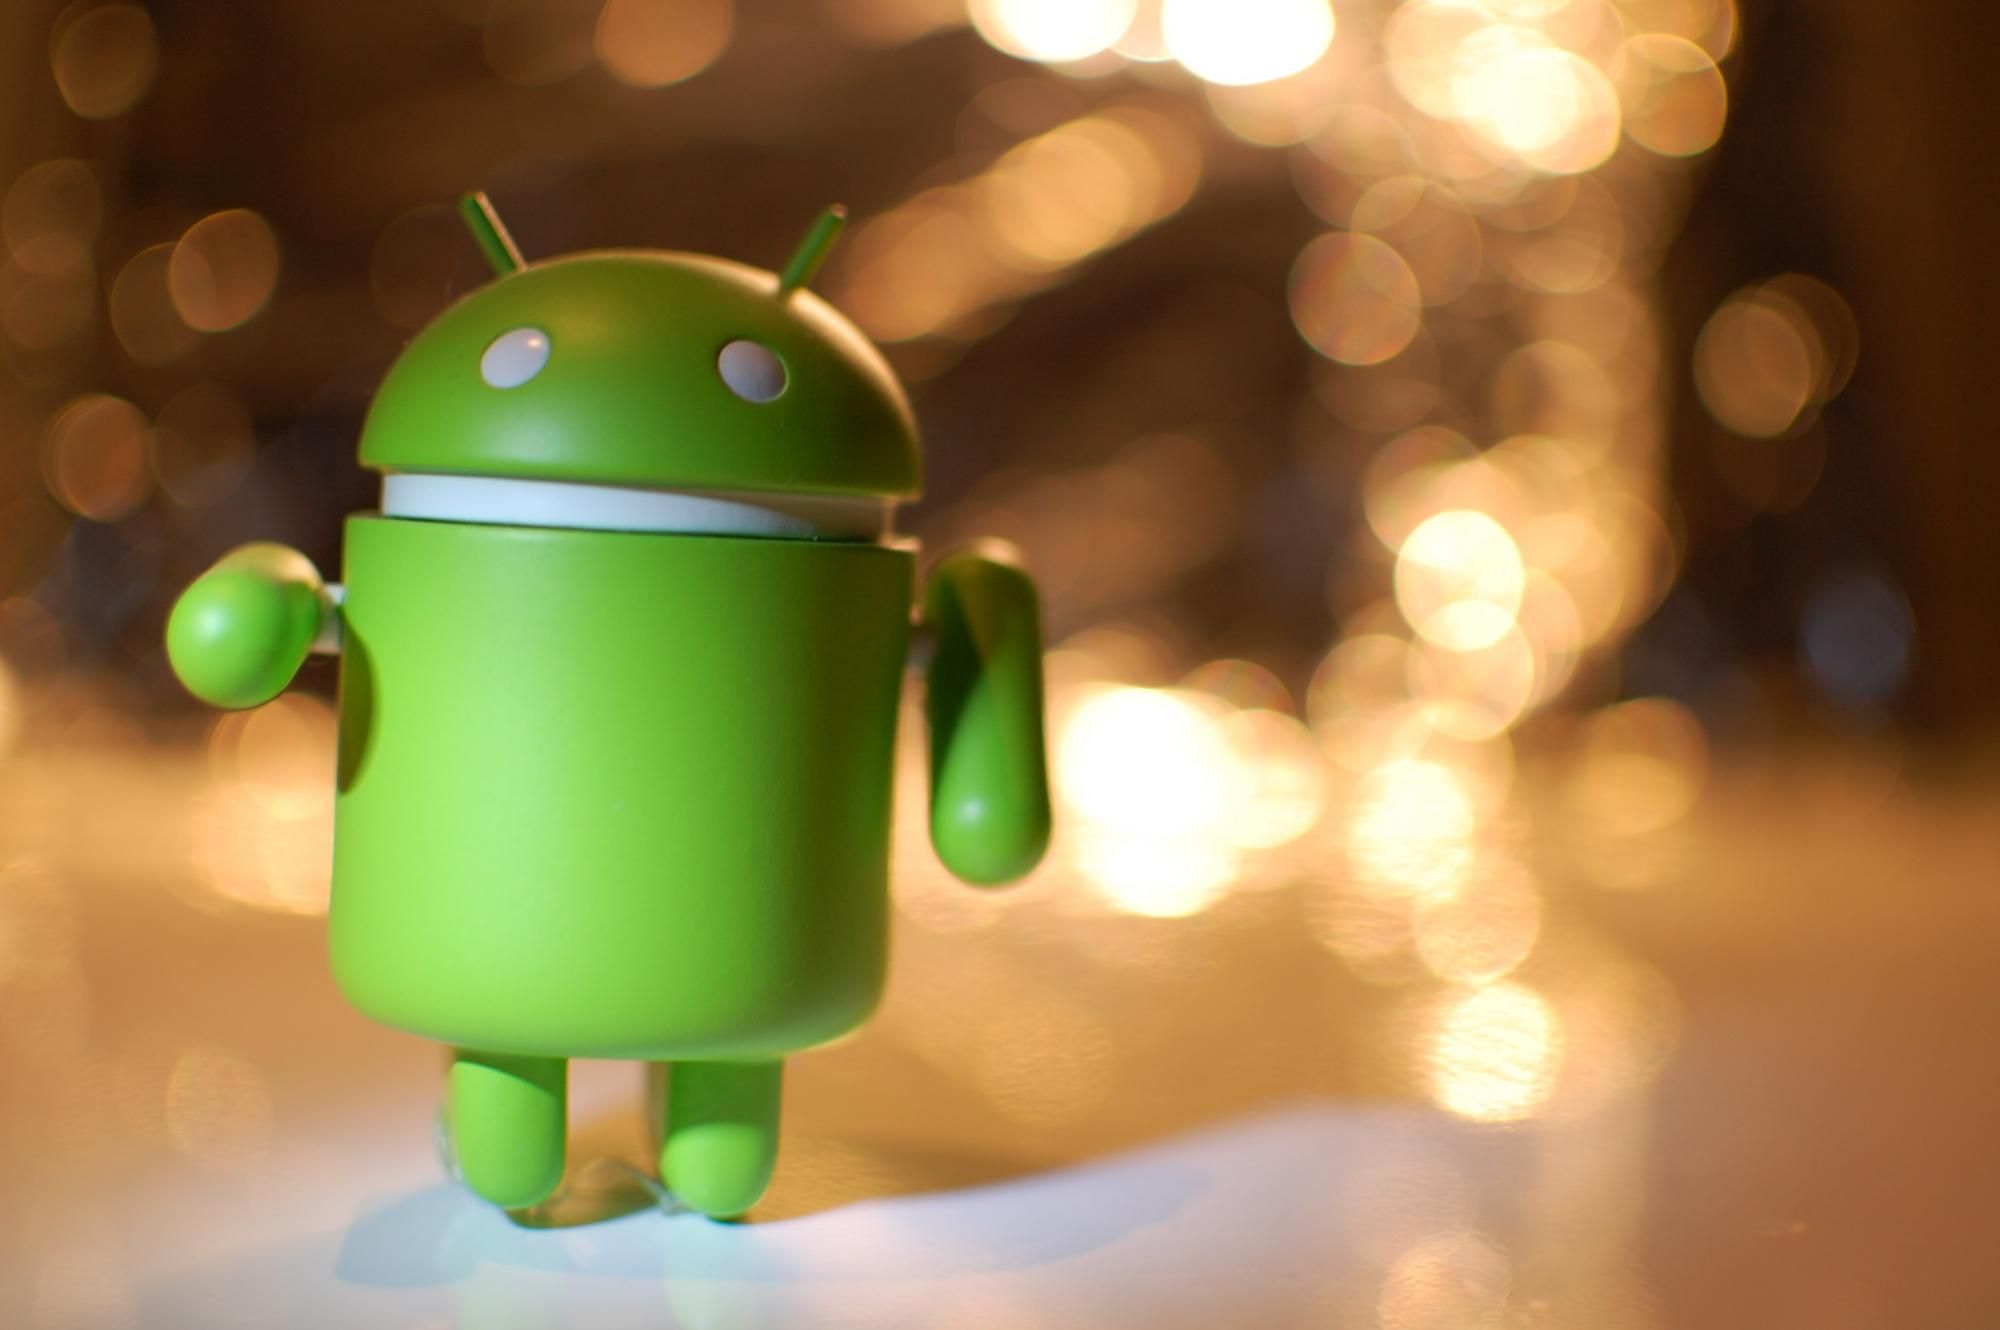 Користувачам Android дозволять відмовитися від відстеження рекламодавцями у додатках